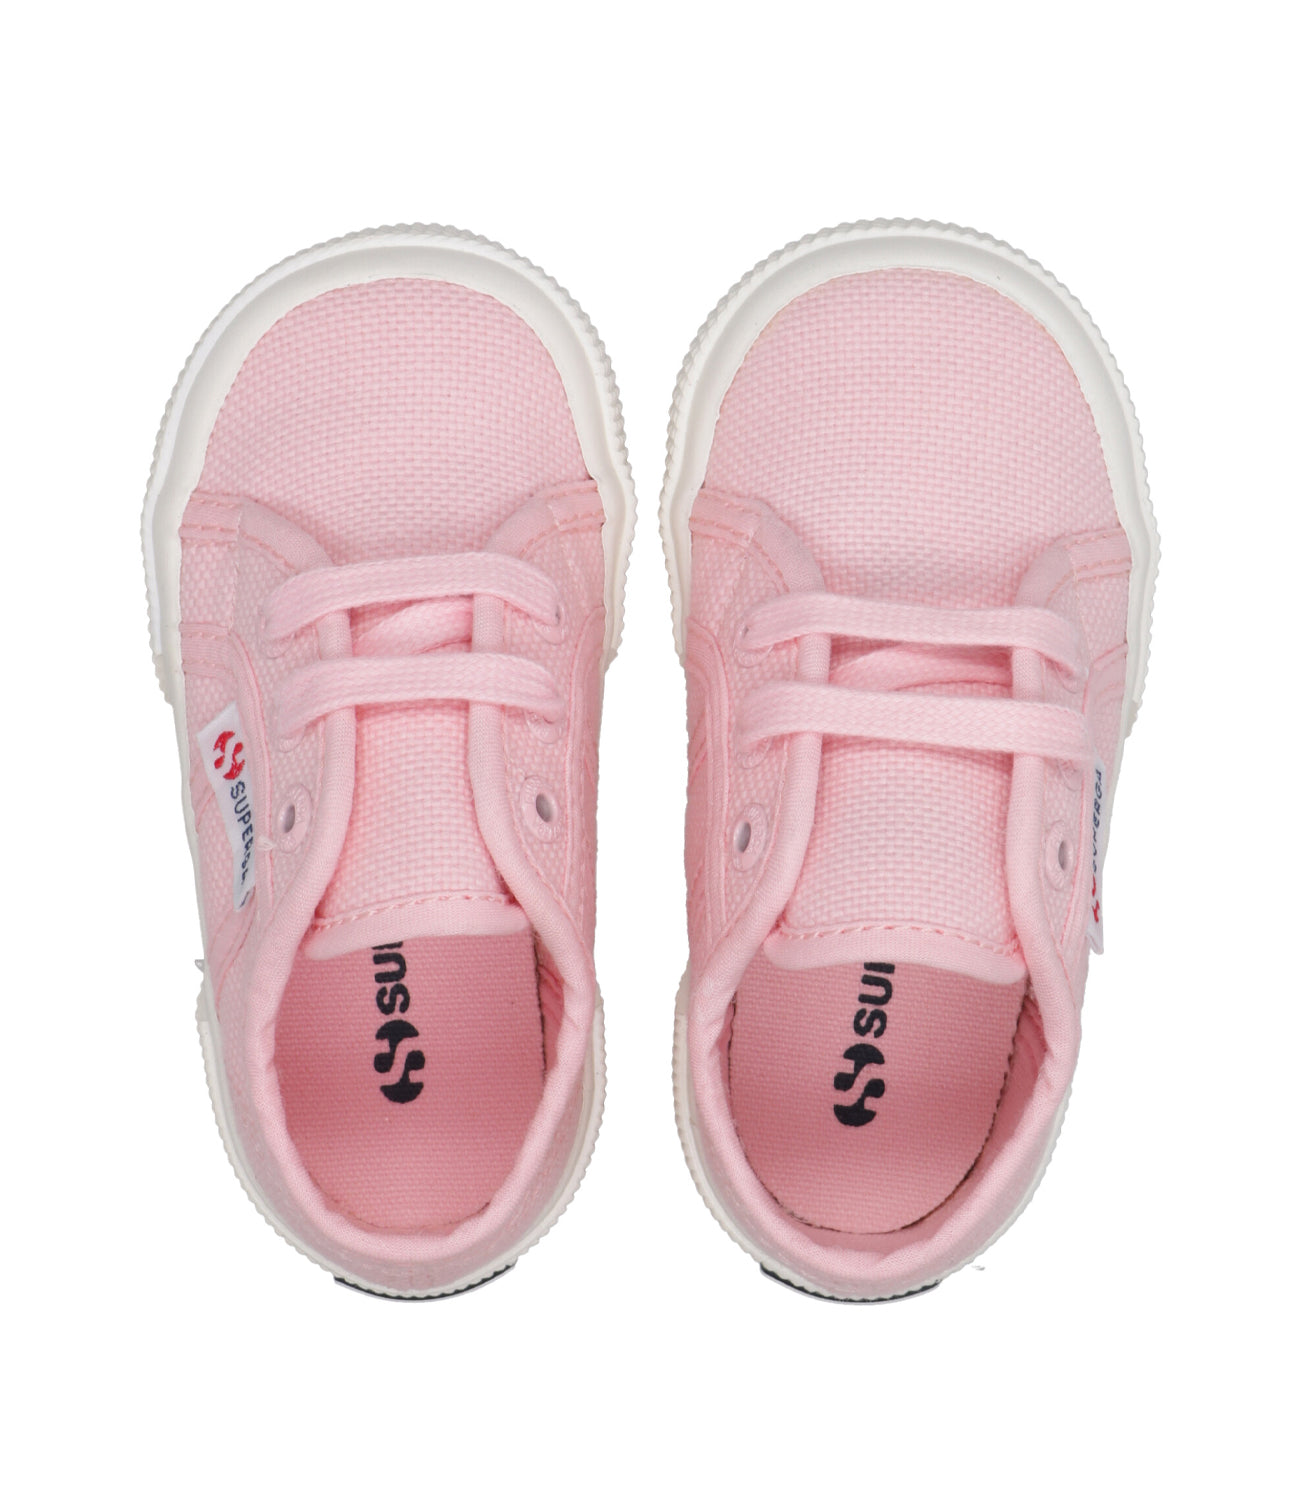 Superga Kids | Sneakers 2750 Baby Rosa